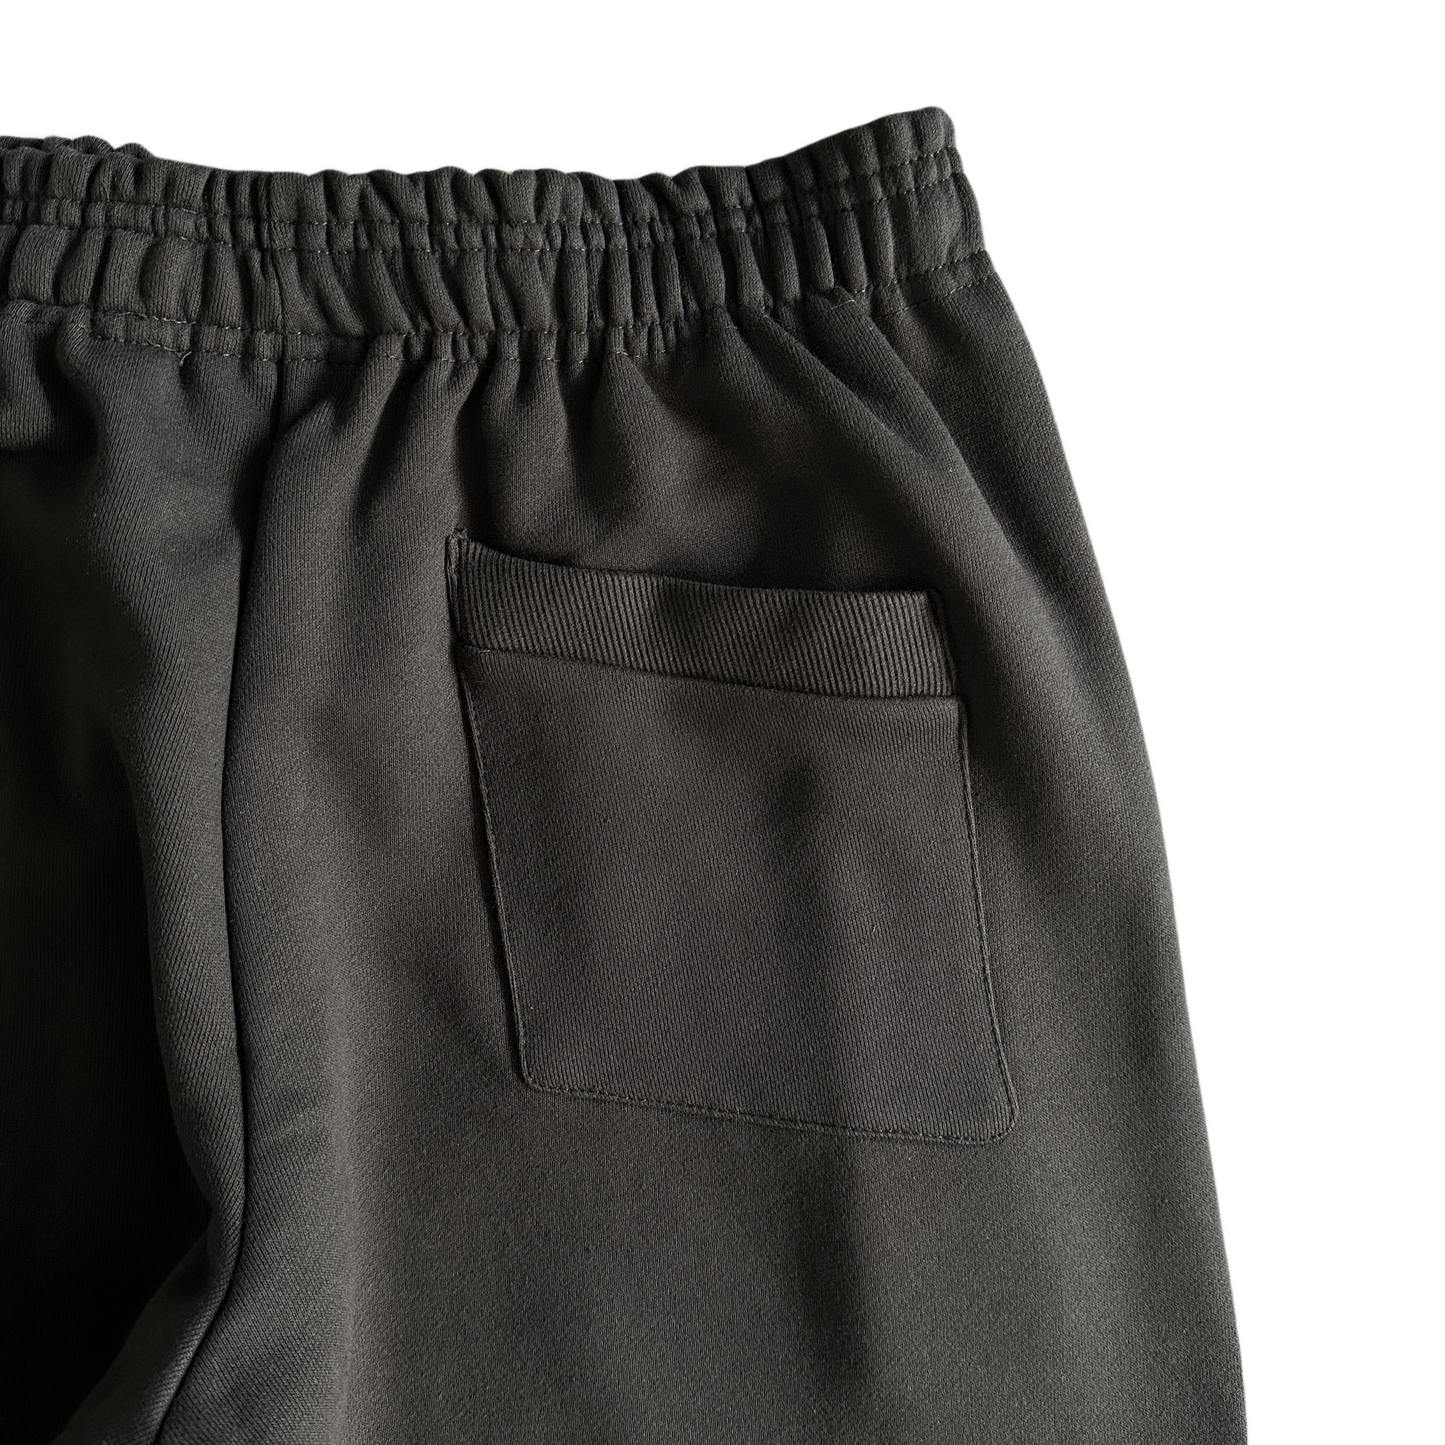 Broken Planet Pantalon de survêtement assorti à la suie Pantalon de jogging streetwear - Noir